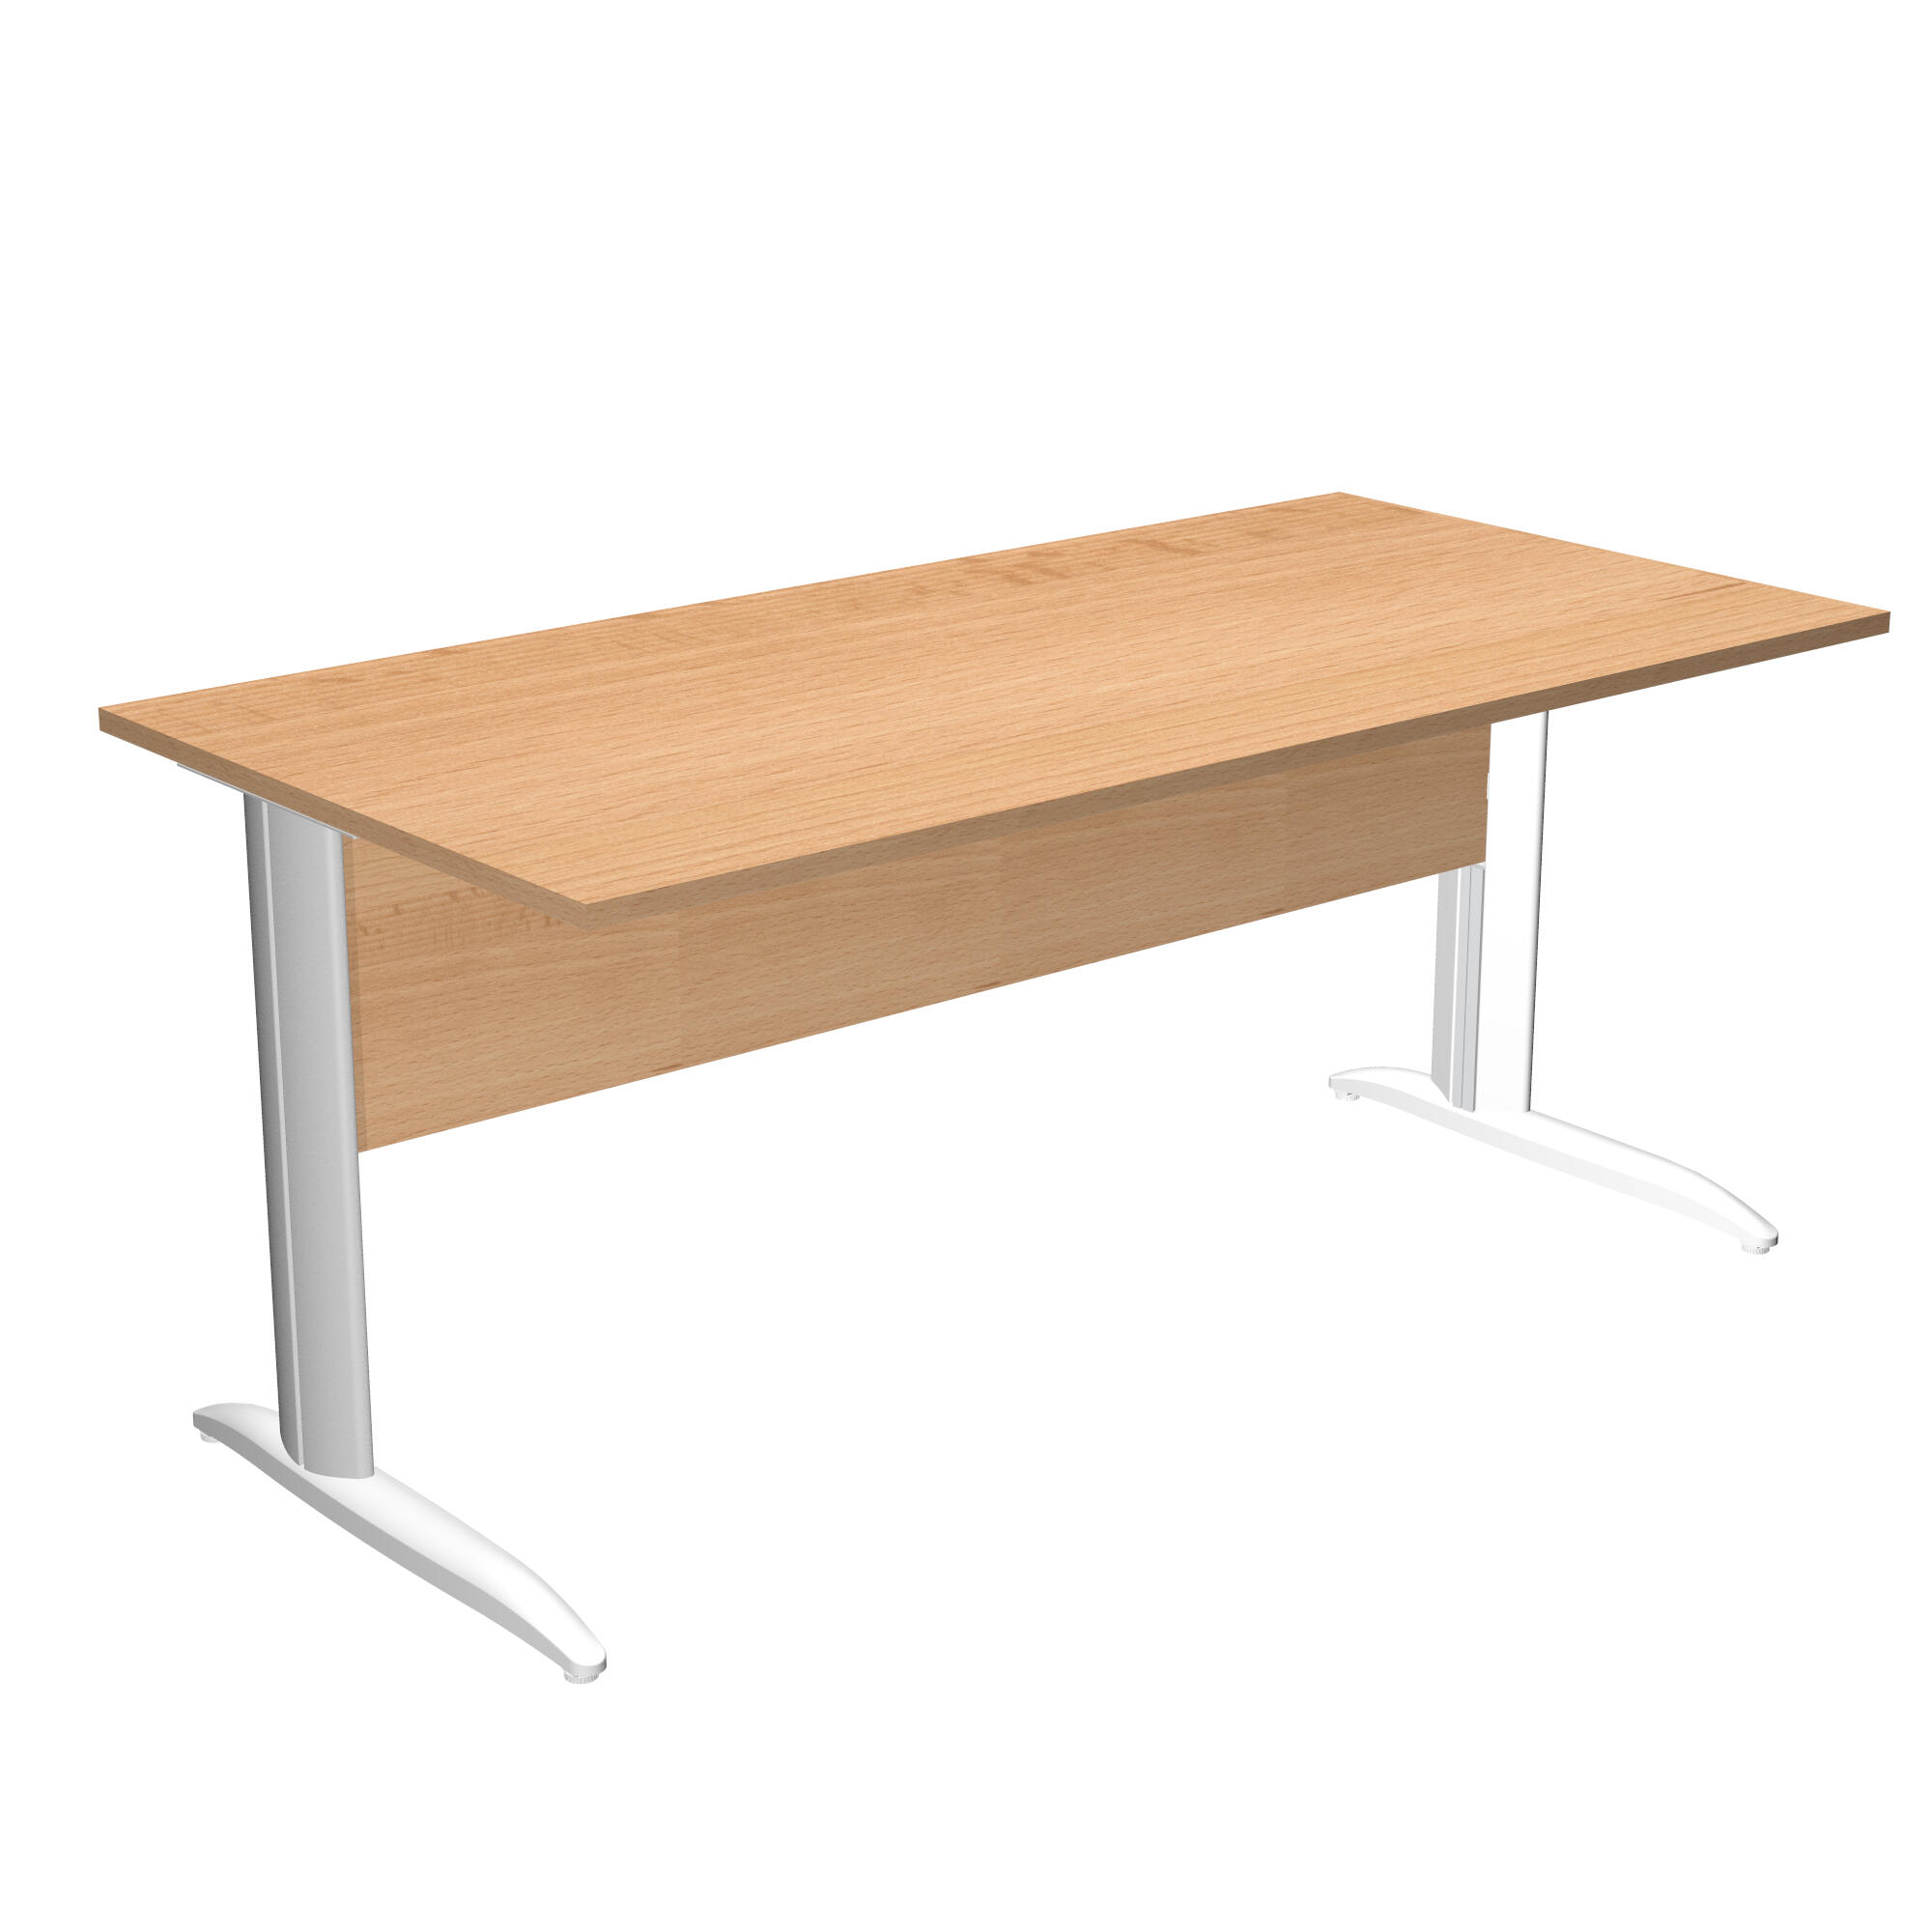 Mesa de escritorio Presto de madera color gris con patas panel de  72x160x80cm